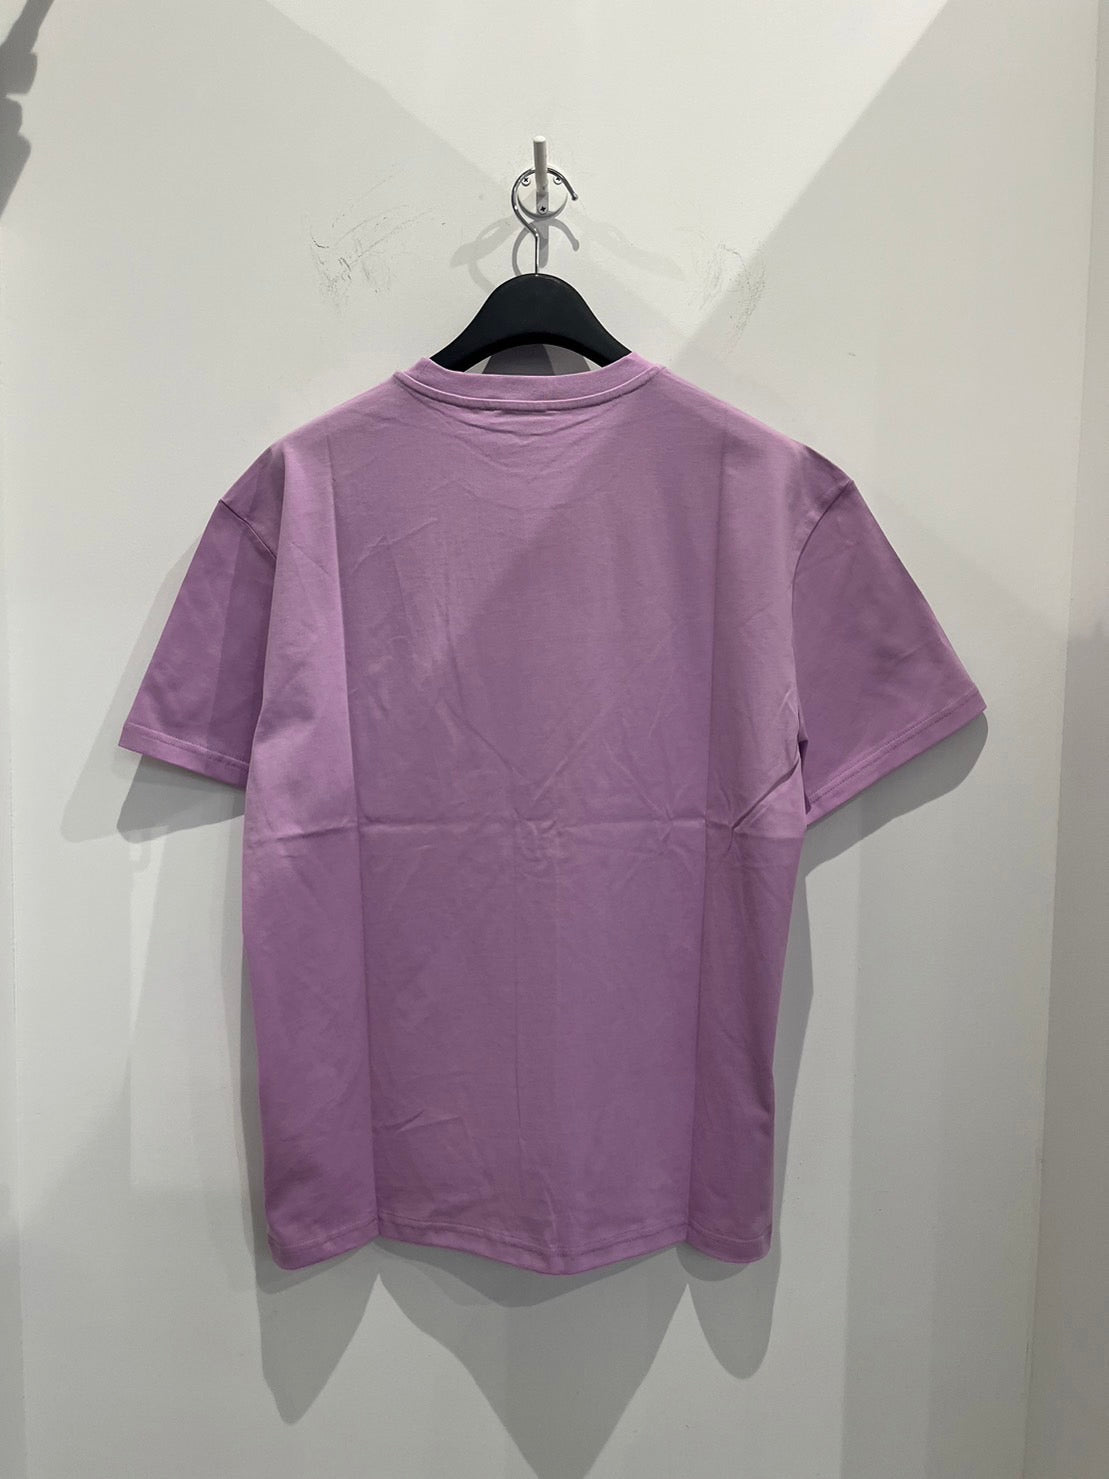 JW ANDERSON/JWアンダーソン Tシャツ <JT0061/PG0772> パープル(紫)